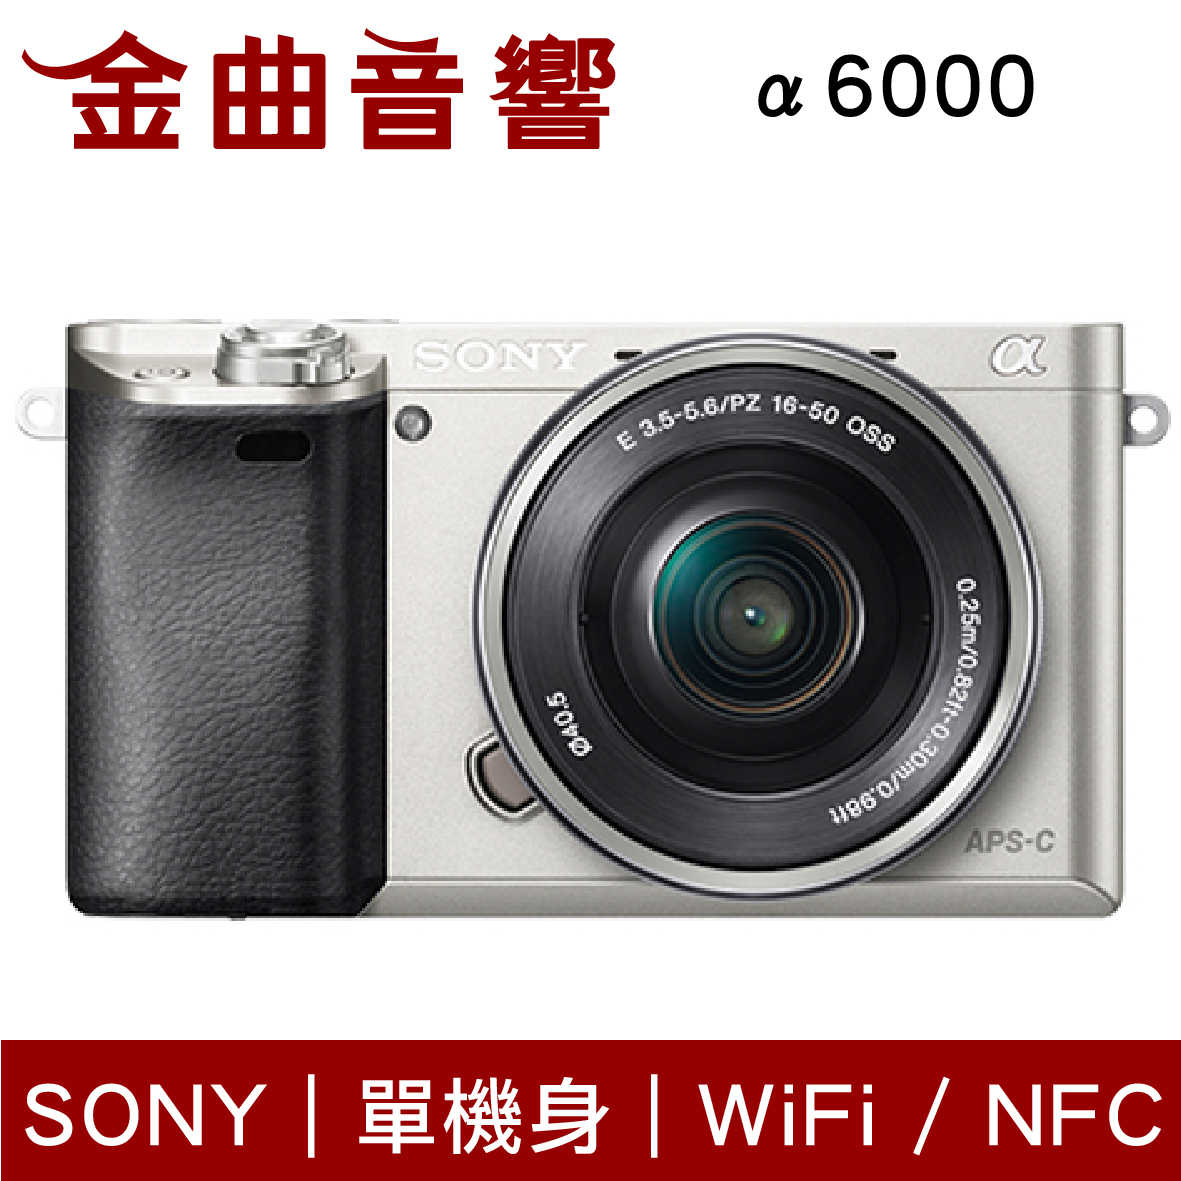 SONY 索尼 α6000 兩色 ILCE-6000 單機身 數位單眼相機 a6000 | 金曲音響